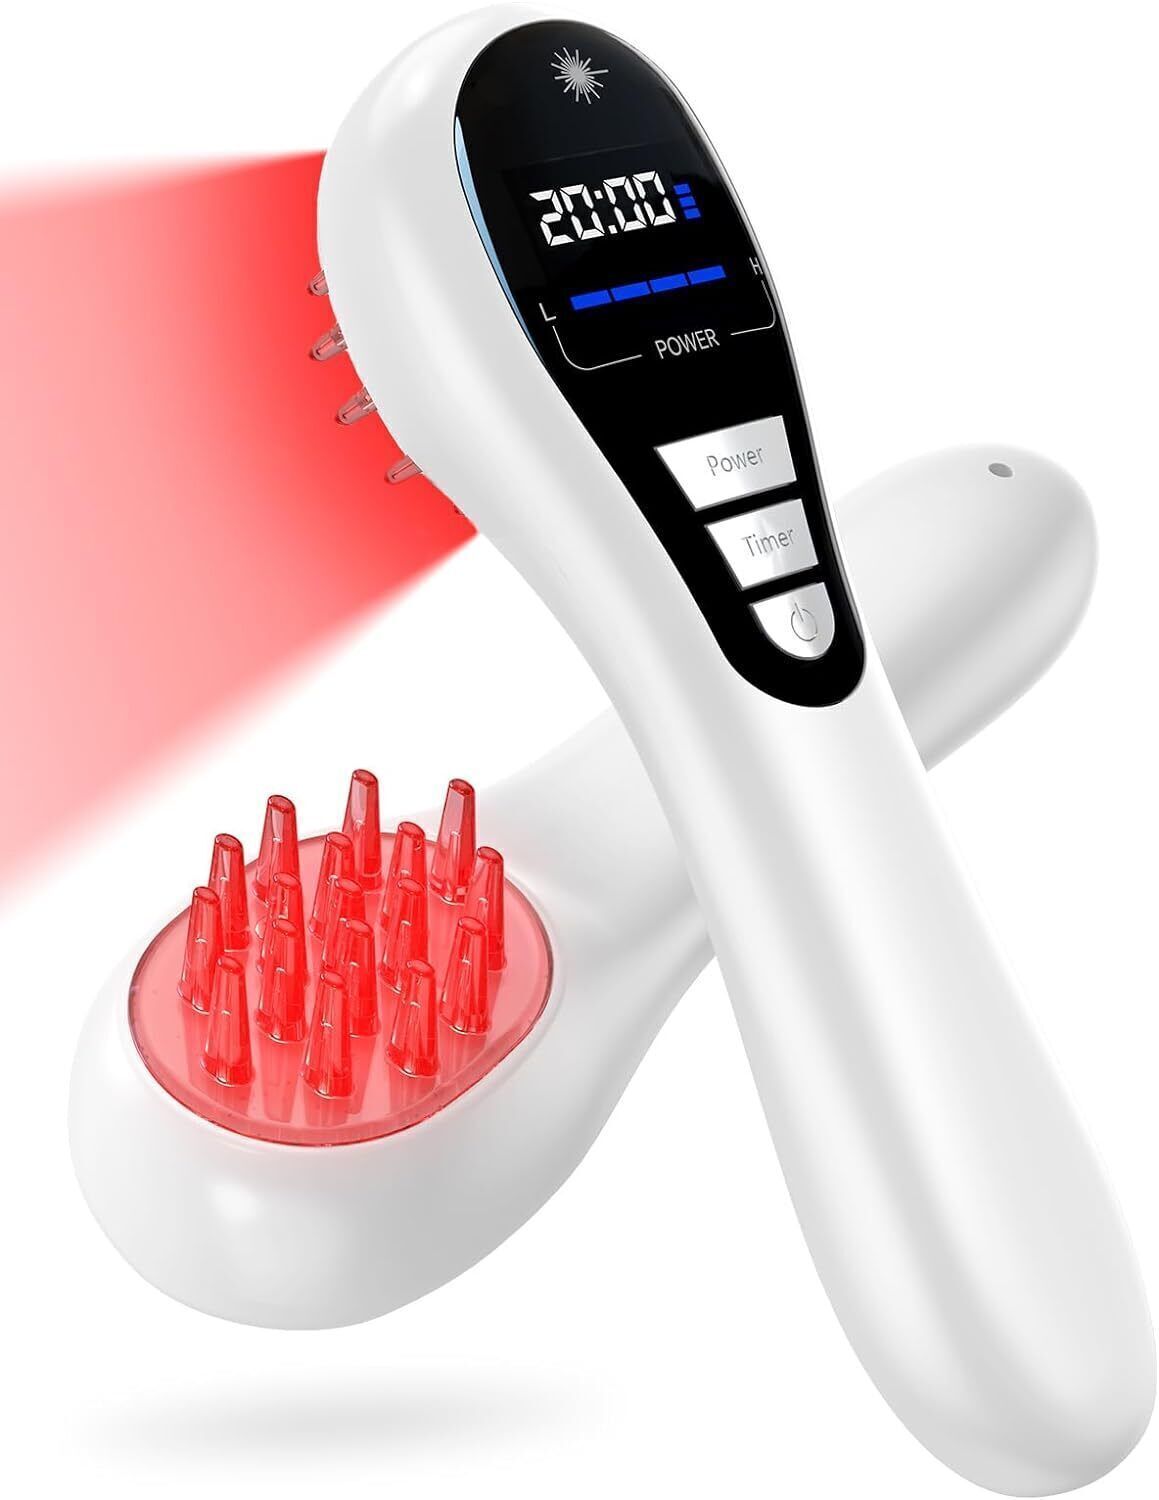 Premium Laser Rotlicht Laserbürste-Laserkamm-gegen Haarausfall Haarwuchsmittel a